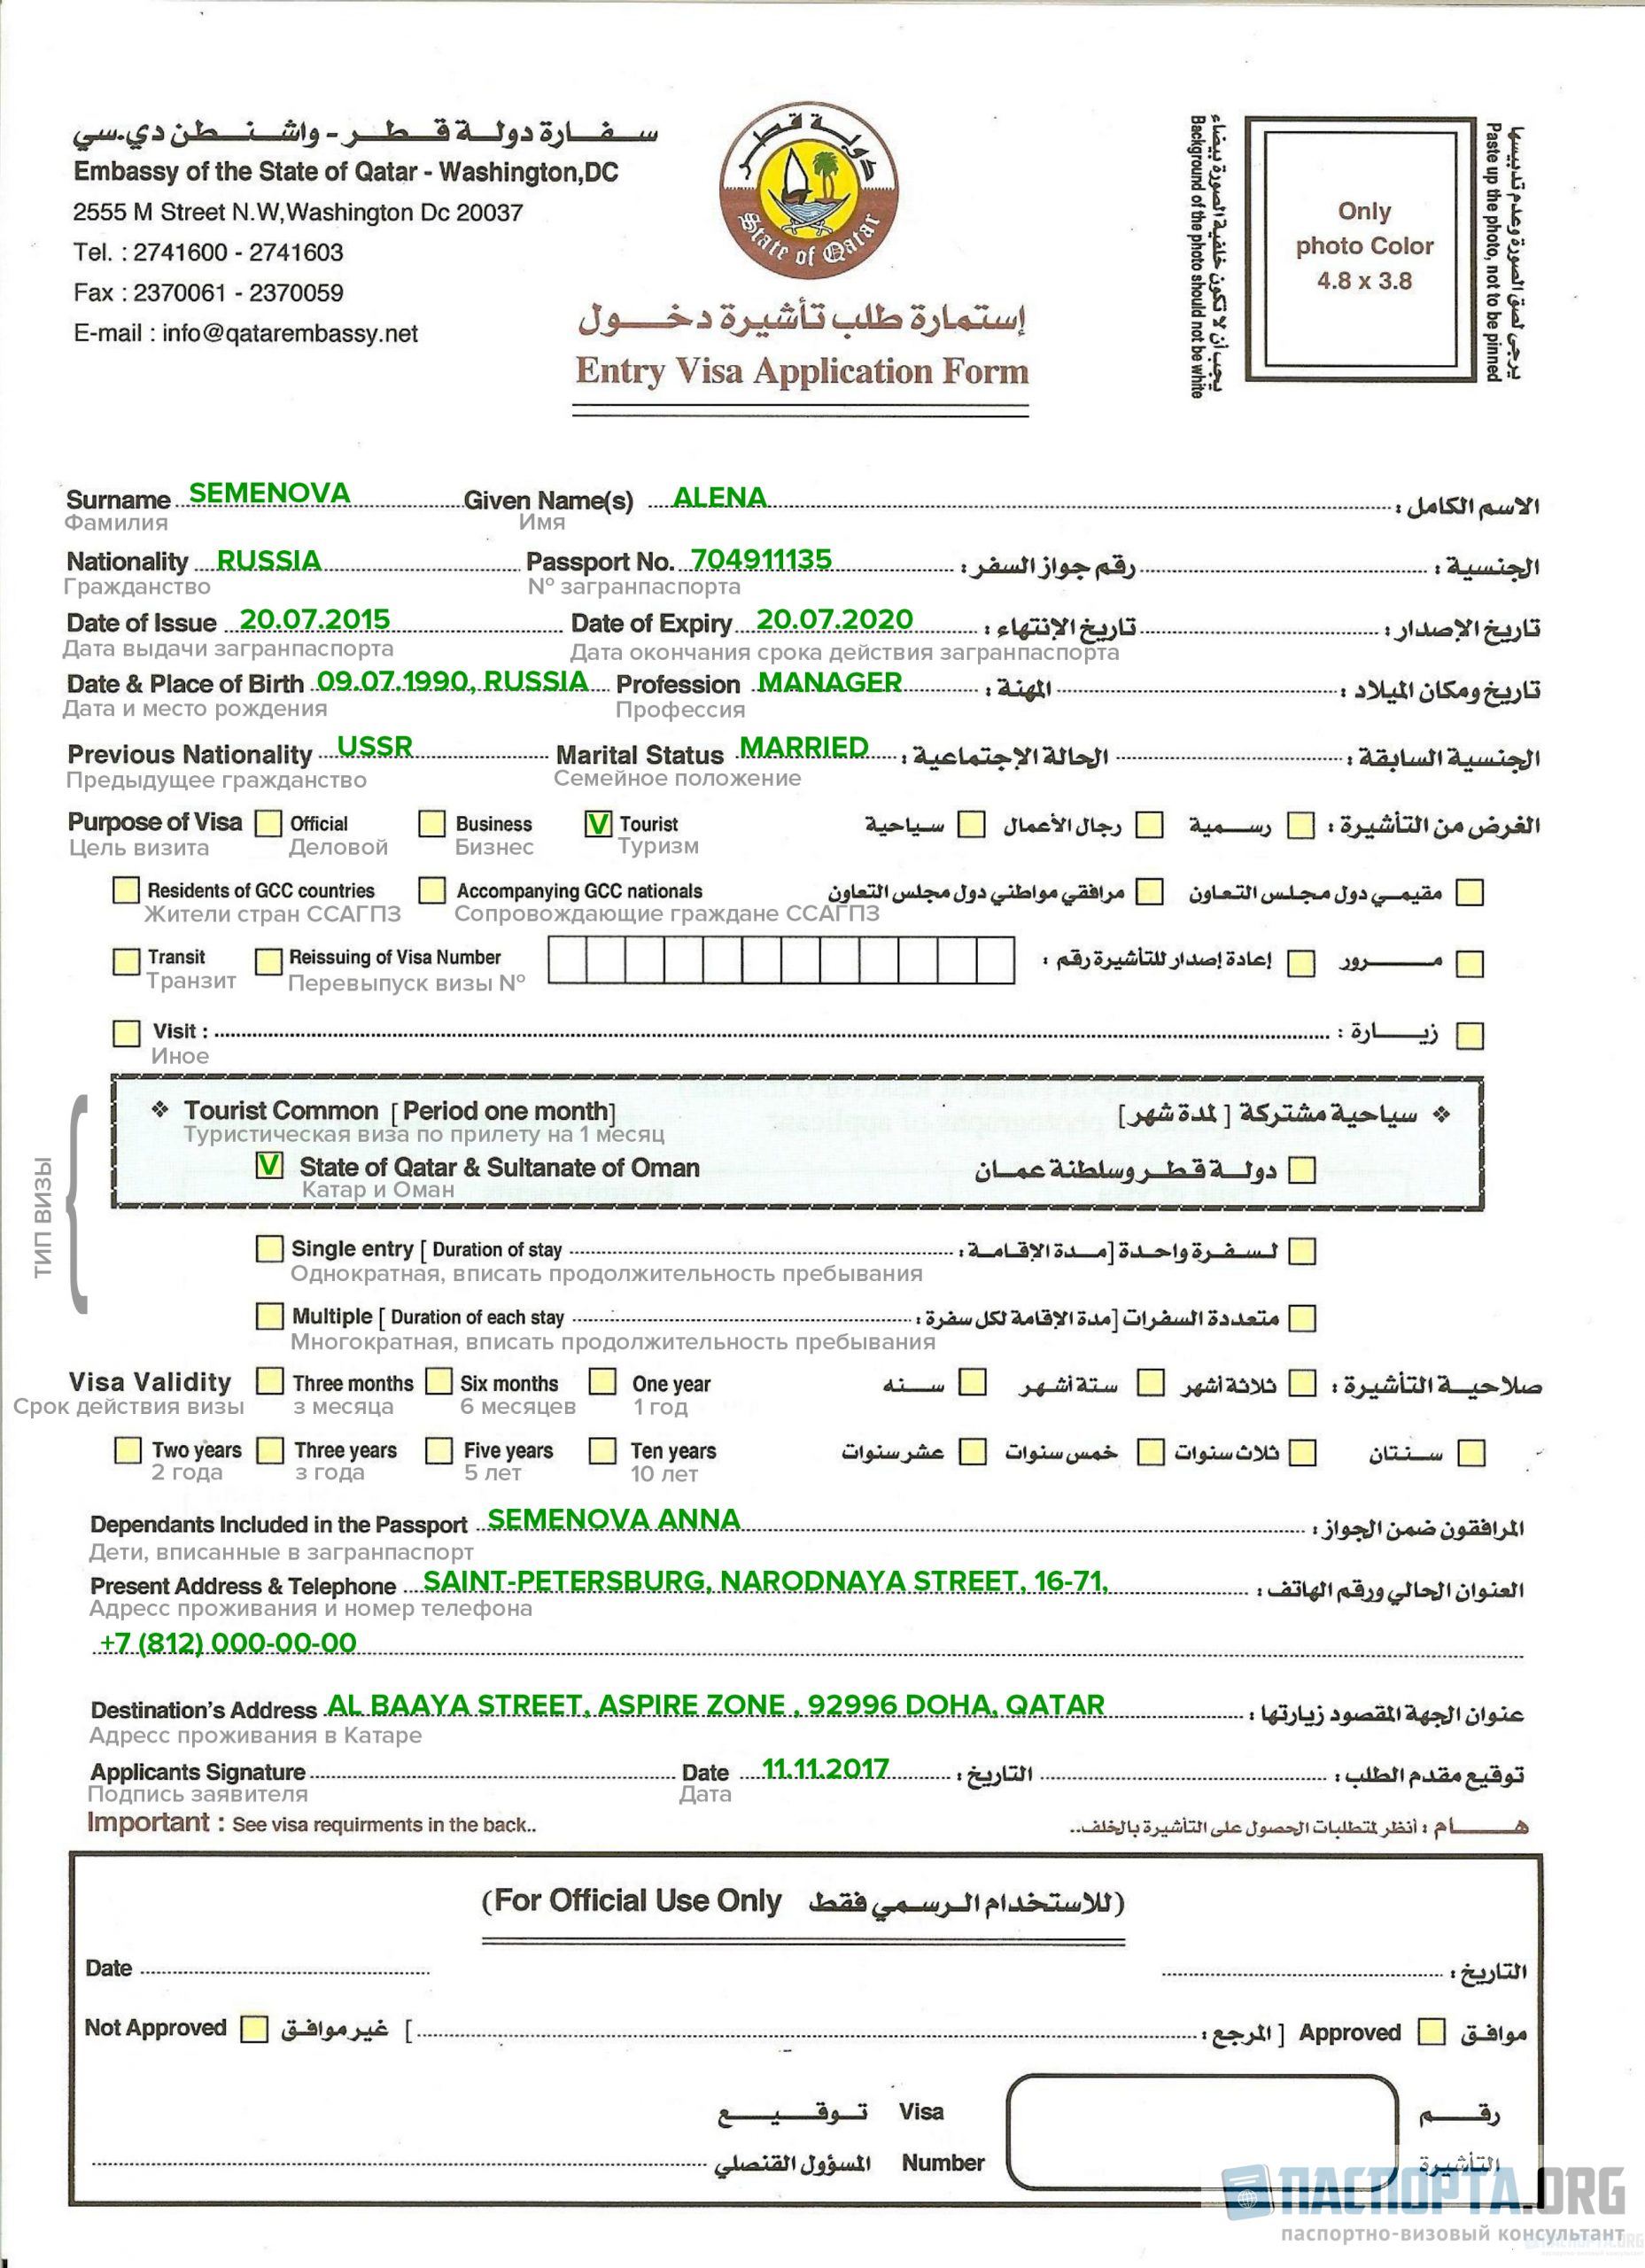 Образец заполнения анкеты для визы в Катар